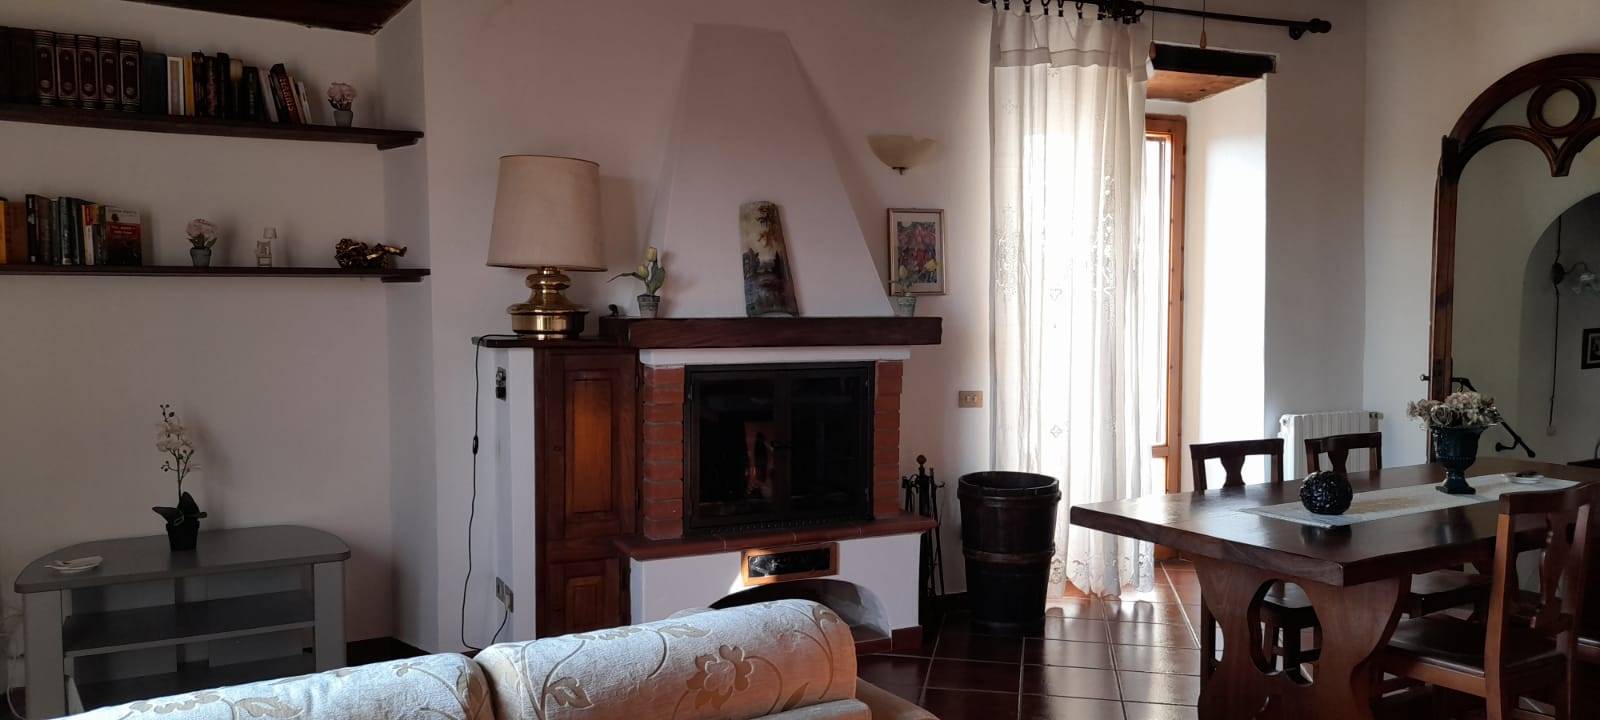 Appartamento in zona Pereta a Magliano in Toscana